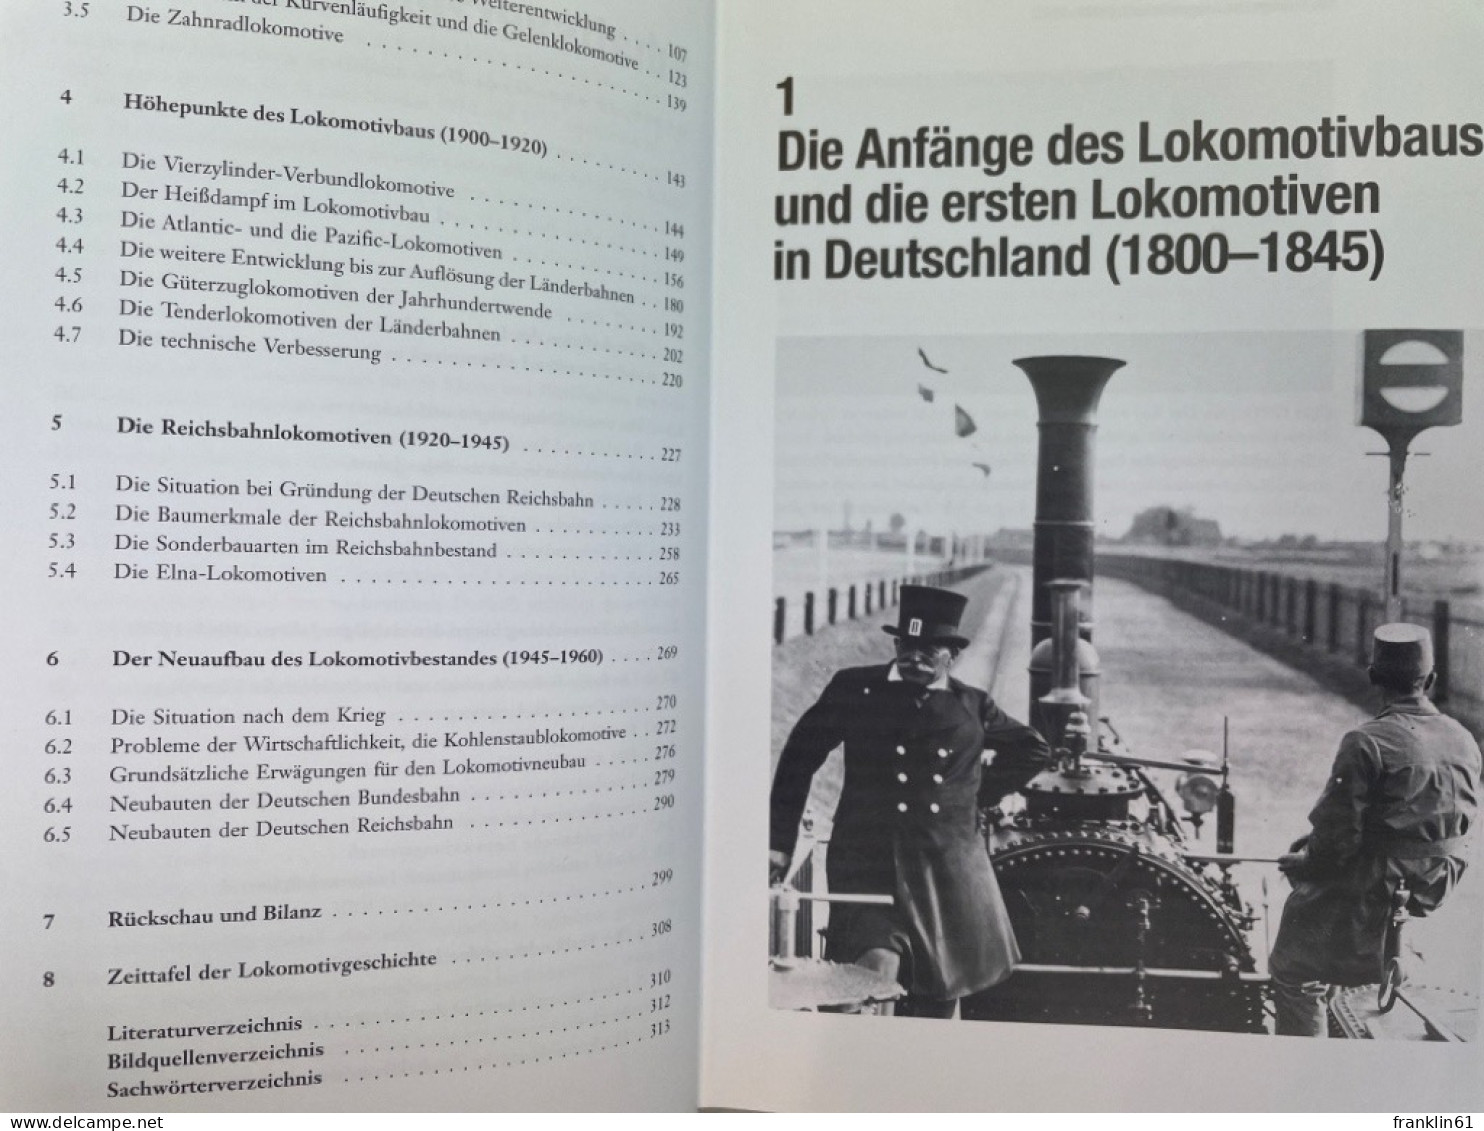 Deutsche Dampflokomotiven : Die Entwicklungsgeschichte. - Trasporti